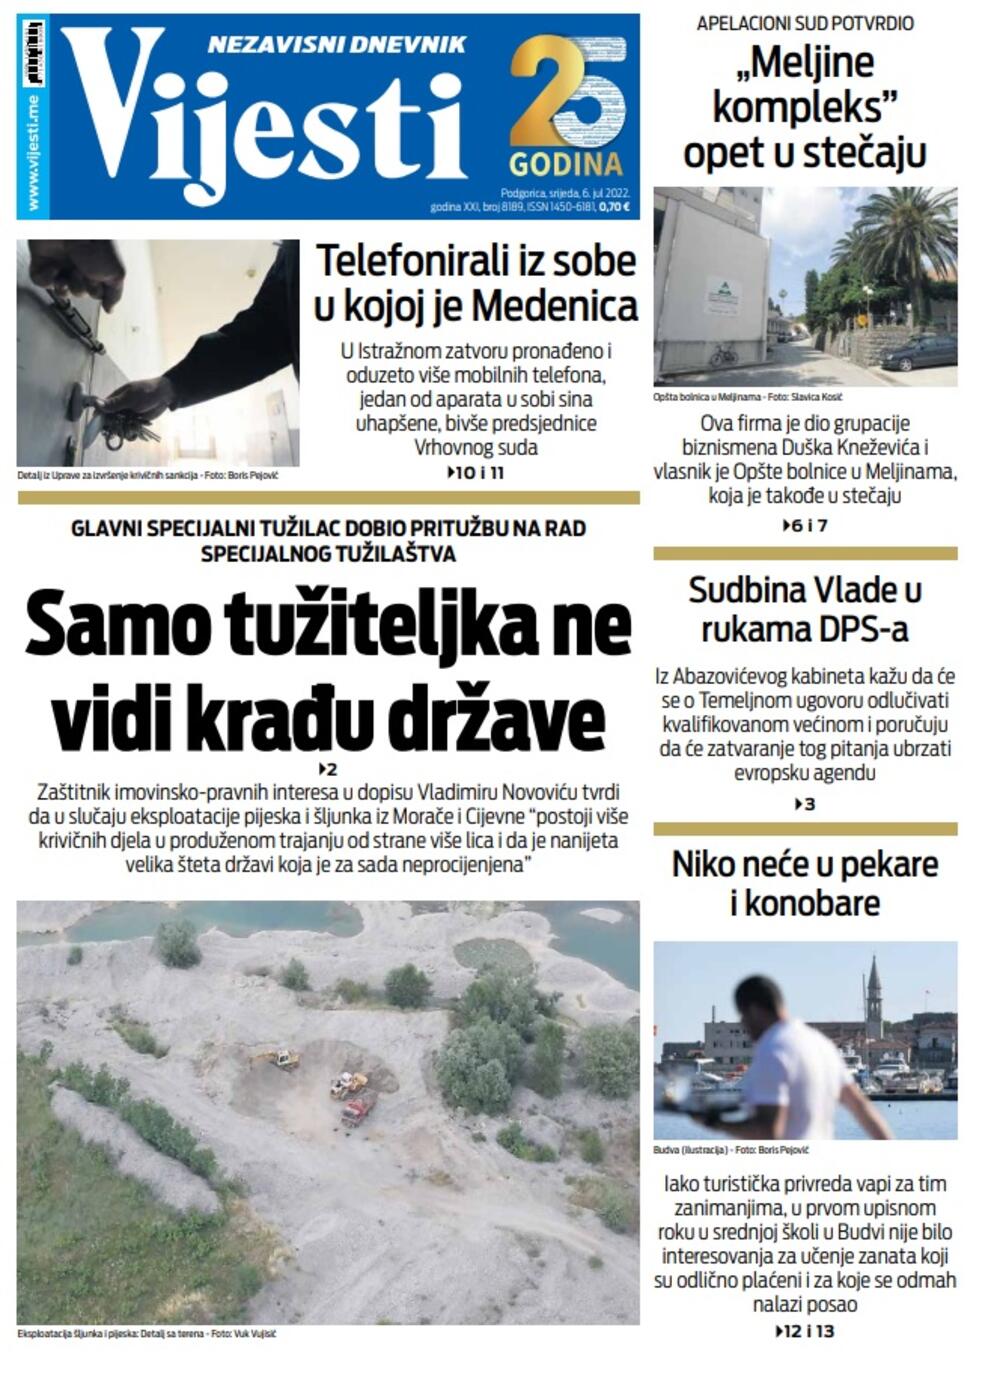 Naslovna strana "Vijesti" za srijedu 6. jul 2022., Foto: Vijesti